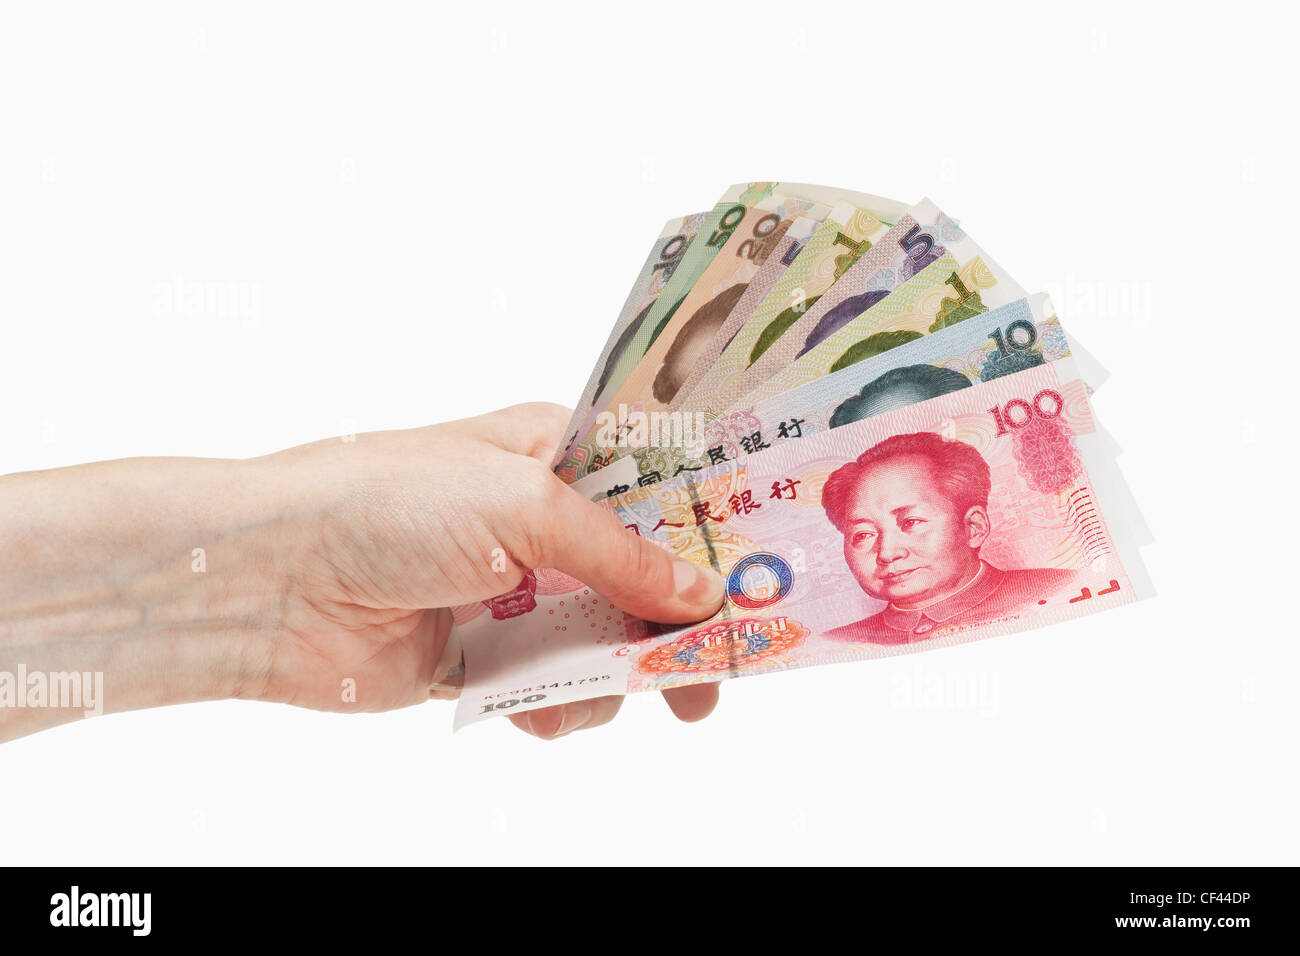 Molti diversi yuan cinese fatture con il ritratto di Mao Zedong sono tenute in mano, sfondo bianco. Foto Stock